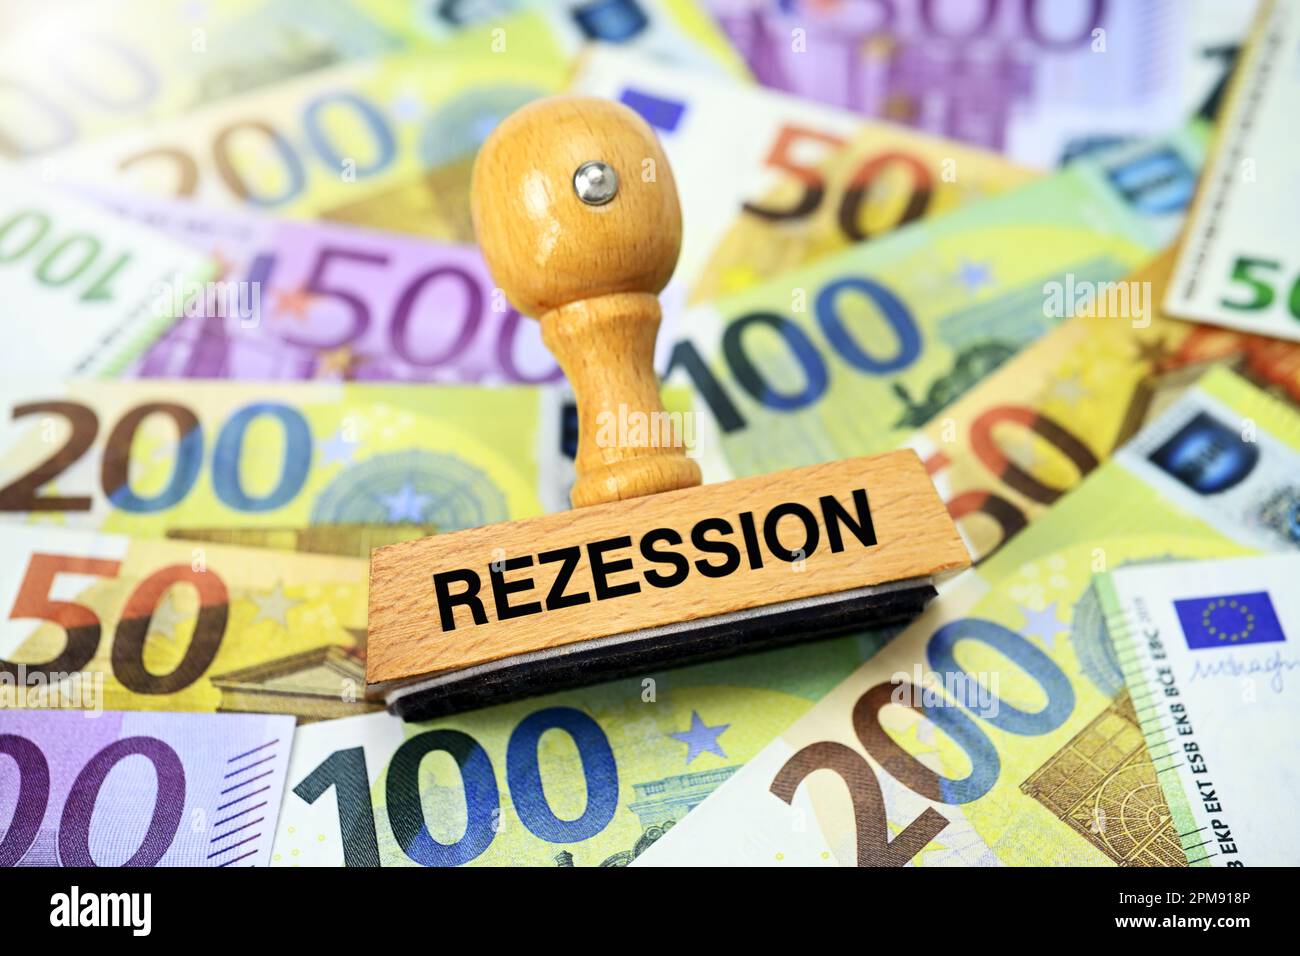 FOTOMONTAGE, Stempel mit Aufschrift Rezession auf Euroscheinen Stock Photo